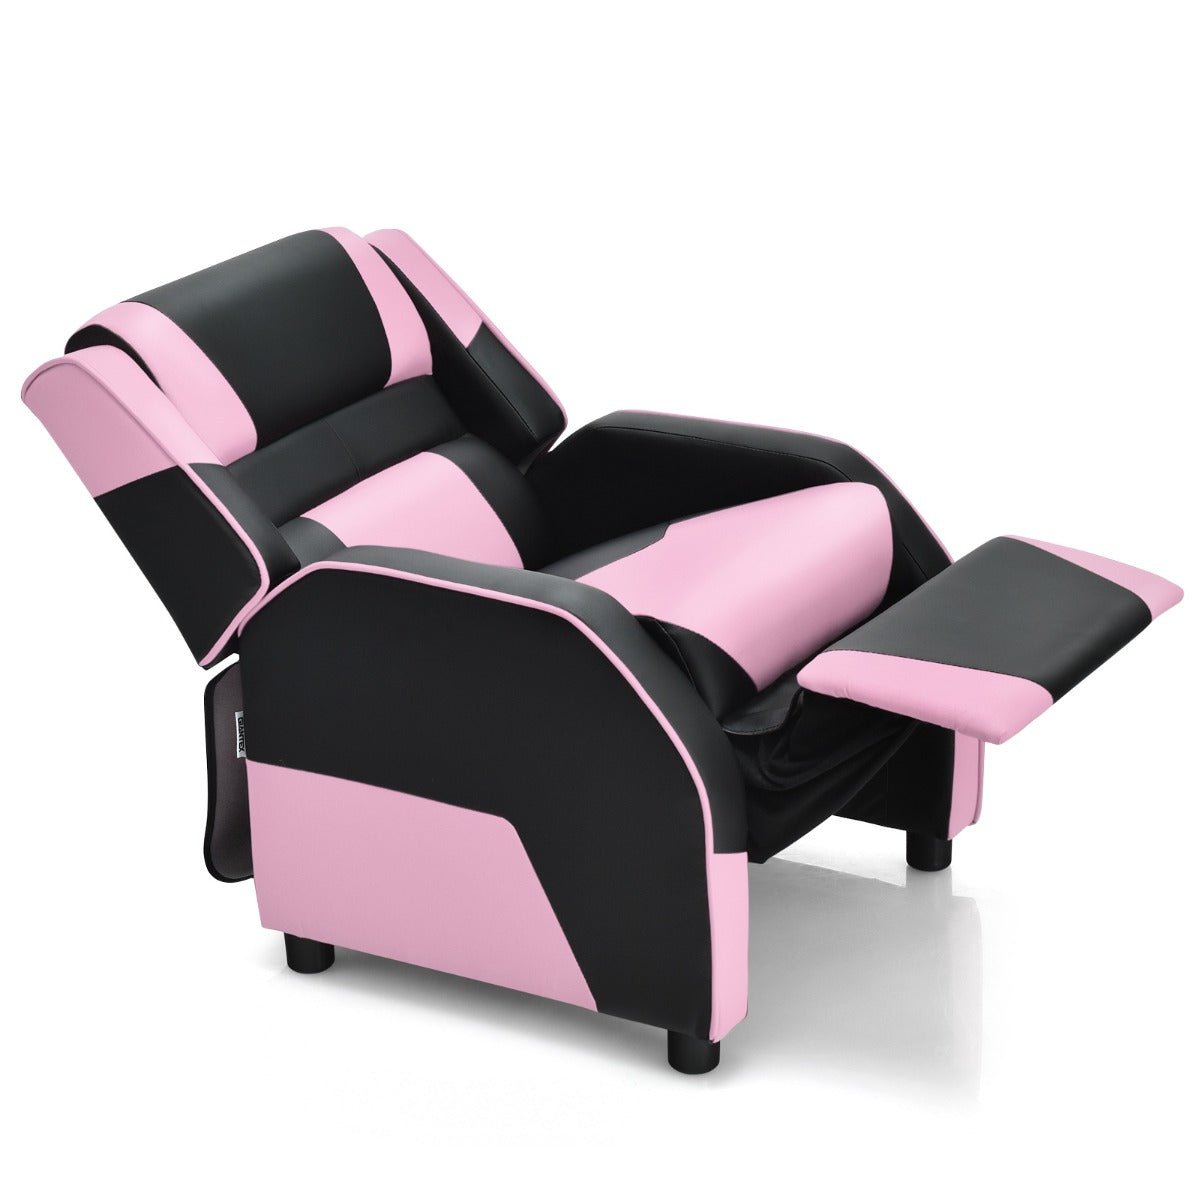 Get Kids Recliner Chair with Adjustable Backrest & Footrest - Pink